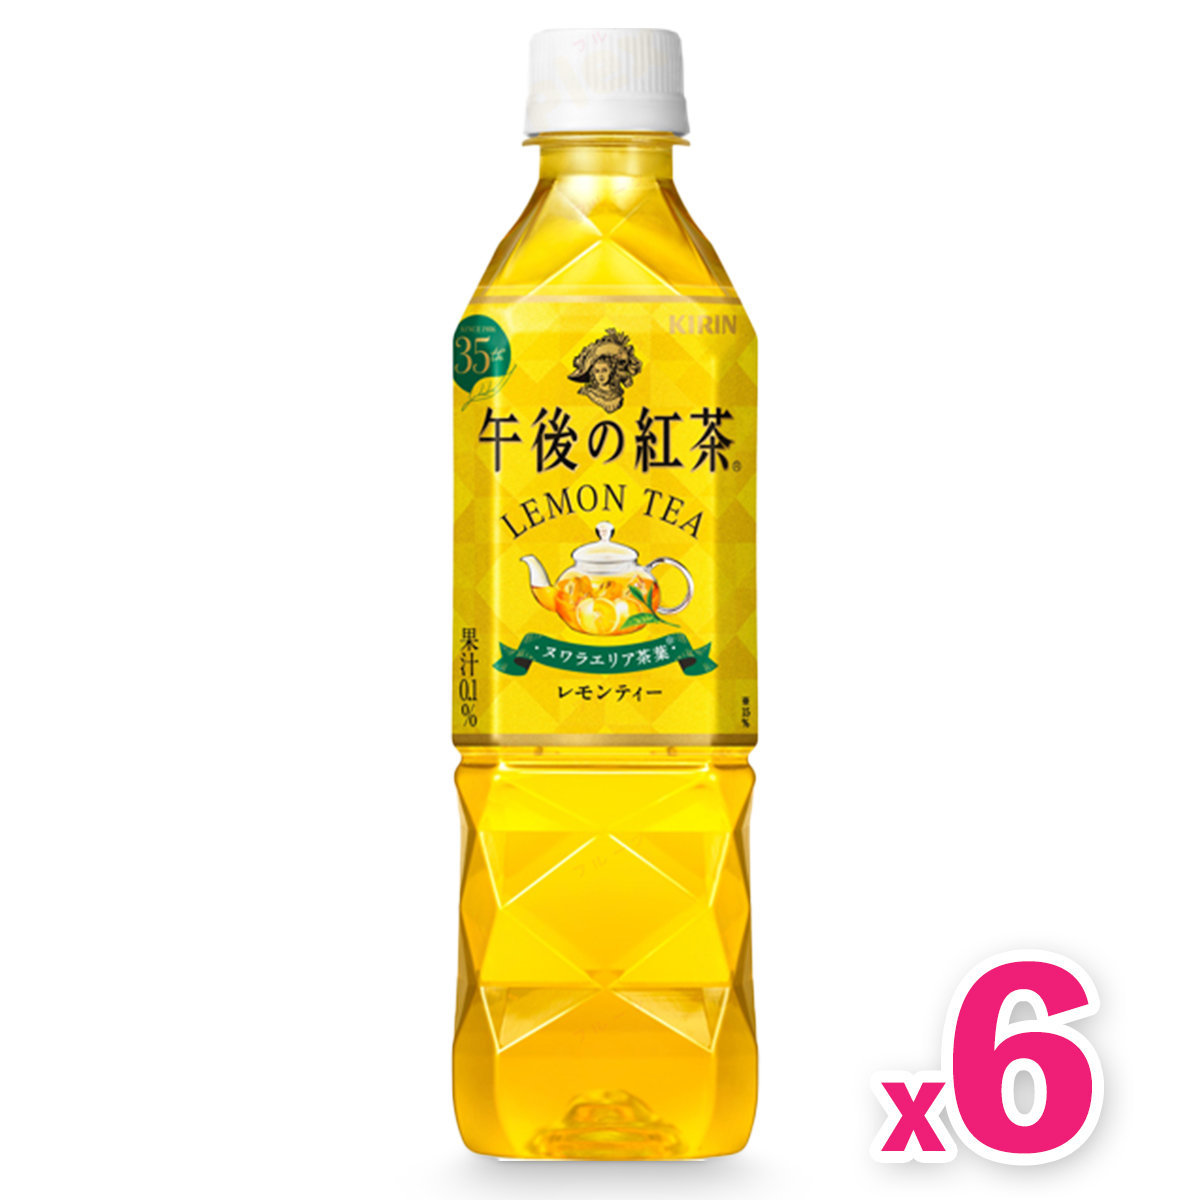 Afternoon Tea - Lemon Tea (500ml) x 6 bottles (Best Before: FEB2024) (隨機發放新舊包裝)